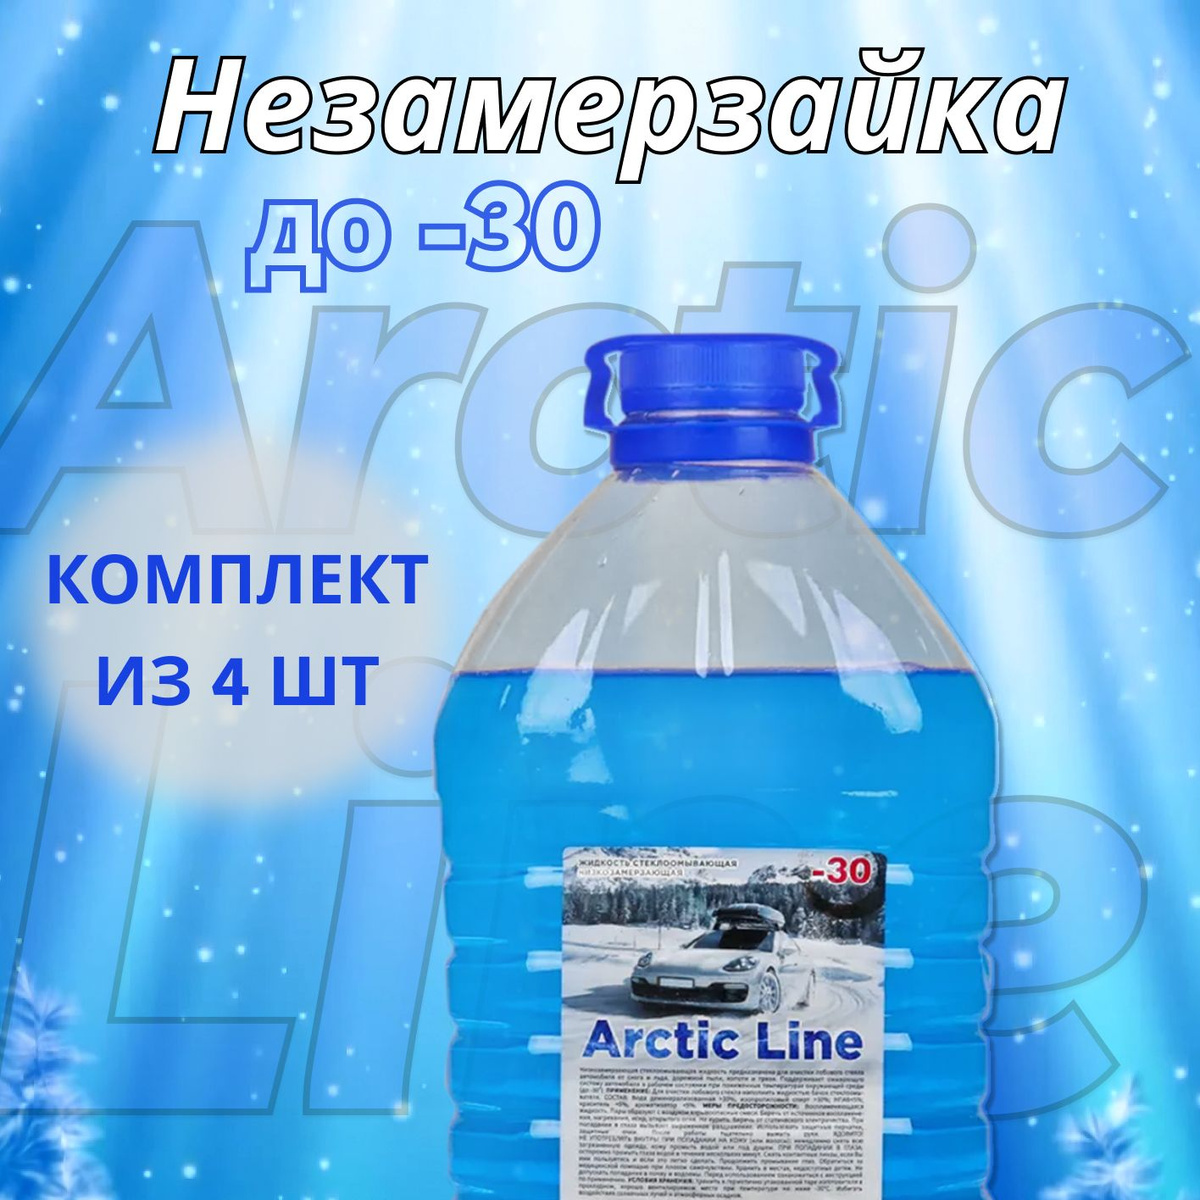 В любое время года стекла автомобиля необходимо поддерживать в чистом виде. В зимнее время к привычным загрязнениям стекол добавляется снежная каша, дорожные реагенты и другие загрязнения. С жидкостью стеклоомывателя Arctic Line Вы сможете с легкостью очистить стекла и фары автомобиля, обеспечив качественный обзор.   Зимняя незамерзайка Arctic Line объемом 5 литров сохраняет свои свойства при температуре до -30 градусов, прекрасно справляясь со своей задачей и не изменяя оптических свойств стекла. За счет своей уникальной формулы омывашка с легкостью очищает стекла автомобиля от любых загрязнений и эффективно убирает со стекла снежную массу, перемешанную со льдом. Благодаря своему качественному составу жидкость стеклоомывателя не наносит вреда лакокрасочному покрытию автомобиля и его пластиковым элементам. Омывайка не оставляет разводов и следов высыхания на поверхности стекла, а также защищает поверхность от абразивного износа, обеспечивая плавное скольжение щеток стеклоочистителя.   Одним из главных преимуществ является высокая текучесть жидкости стеклоомывателя. При температурах, превышающих нижний порог температуры жидкость стеклоомывателя не кристаллизуется, а становится гелеобразной. Жидкость стеклоомывателя Arctic Line - незаменимый помощник в обеспечении качественного обзора!